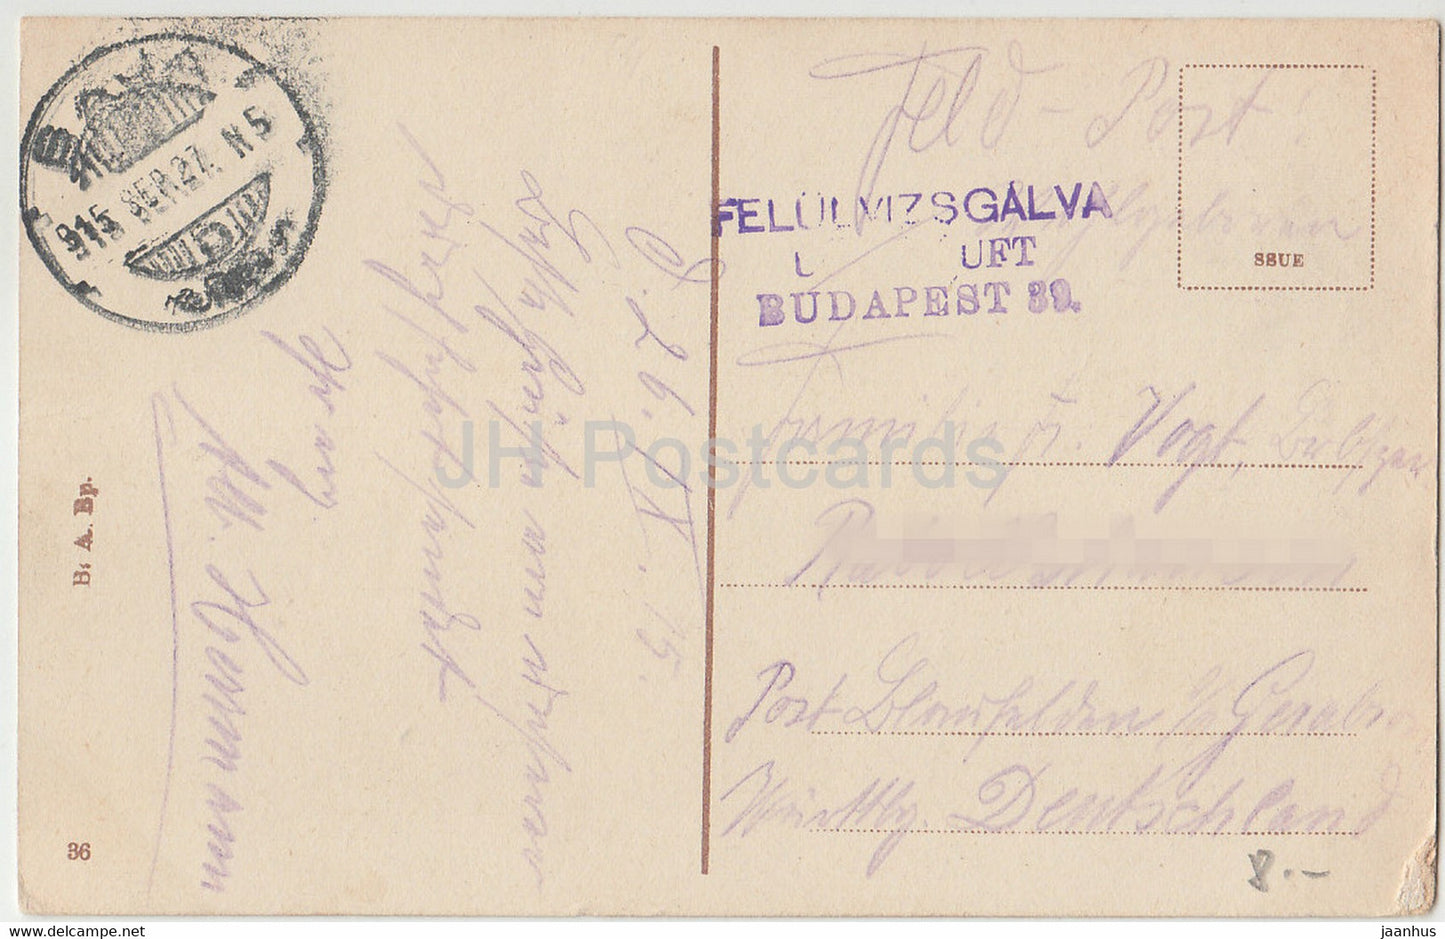 Budapest - Vajda Hunyad vara - Burg von Vajda Hunyad - Feldpost - carte postale ancienne - 1915 - Hongrie - utilisé